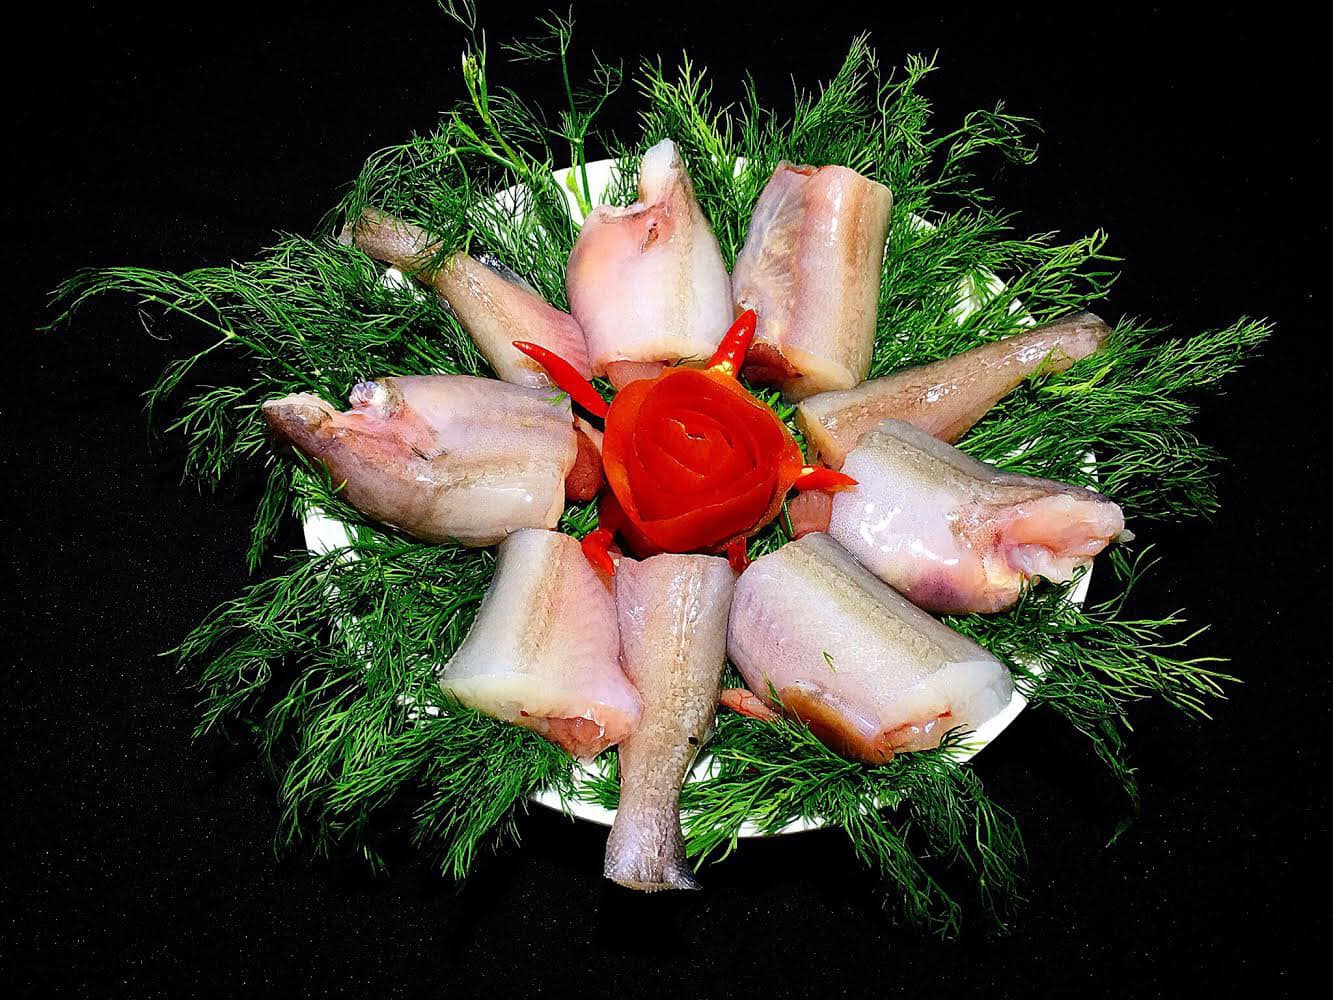 Món cá 'nhà nghèo' ăn 'mềm như cháo' thành đặc sản giá vài trăm nghìn/kg - Ảnh 2.